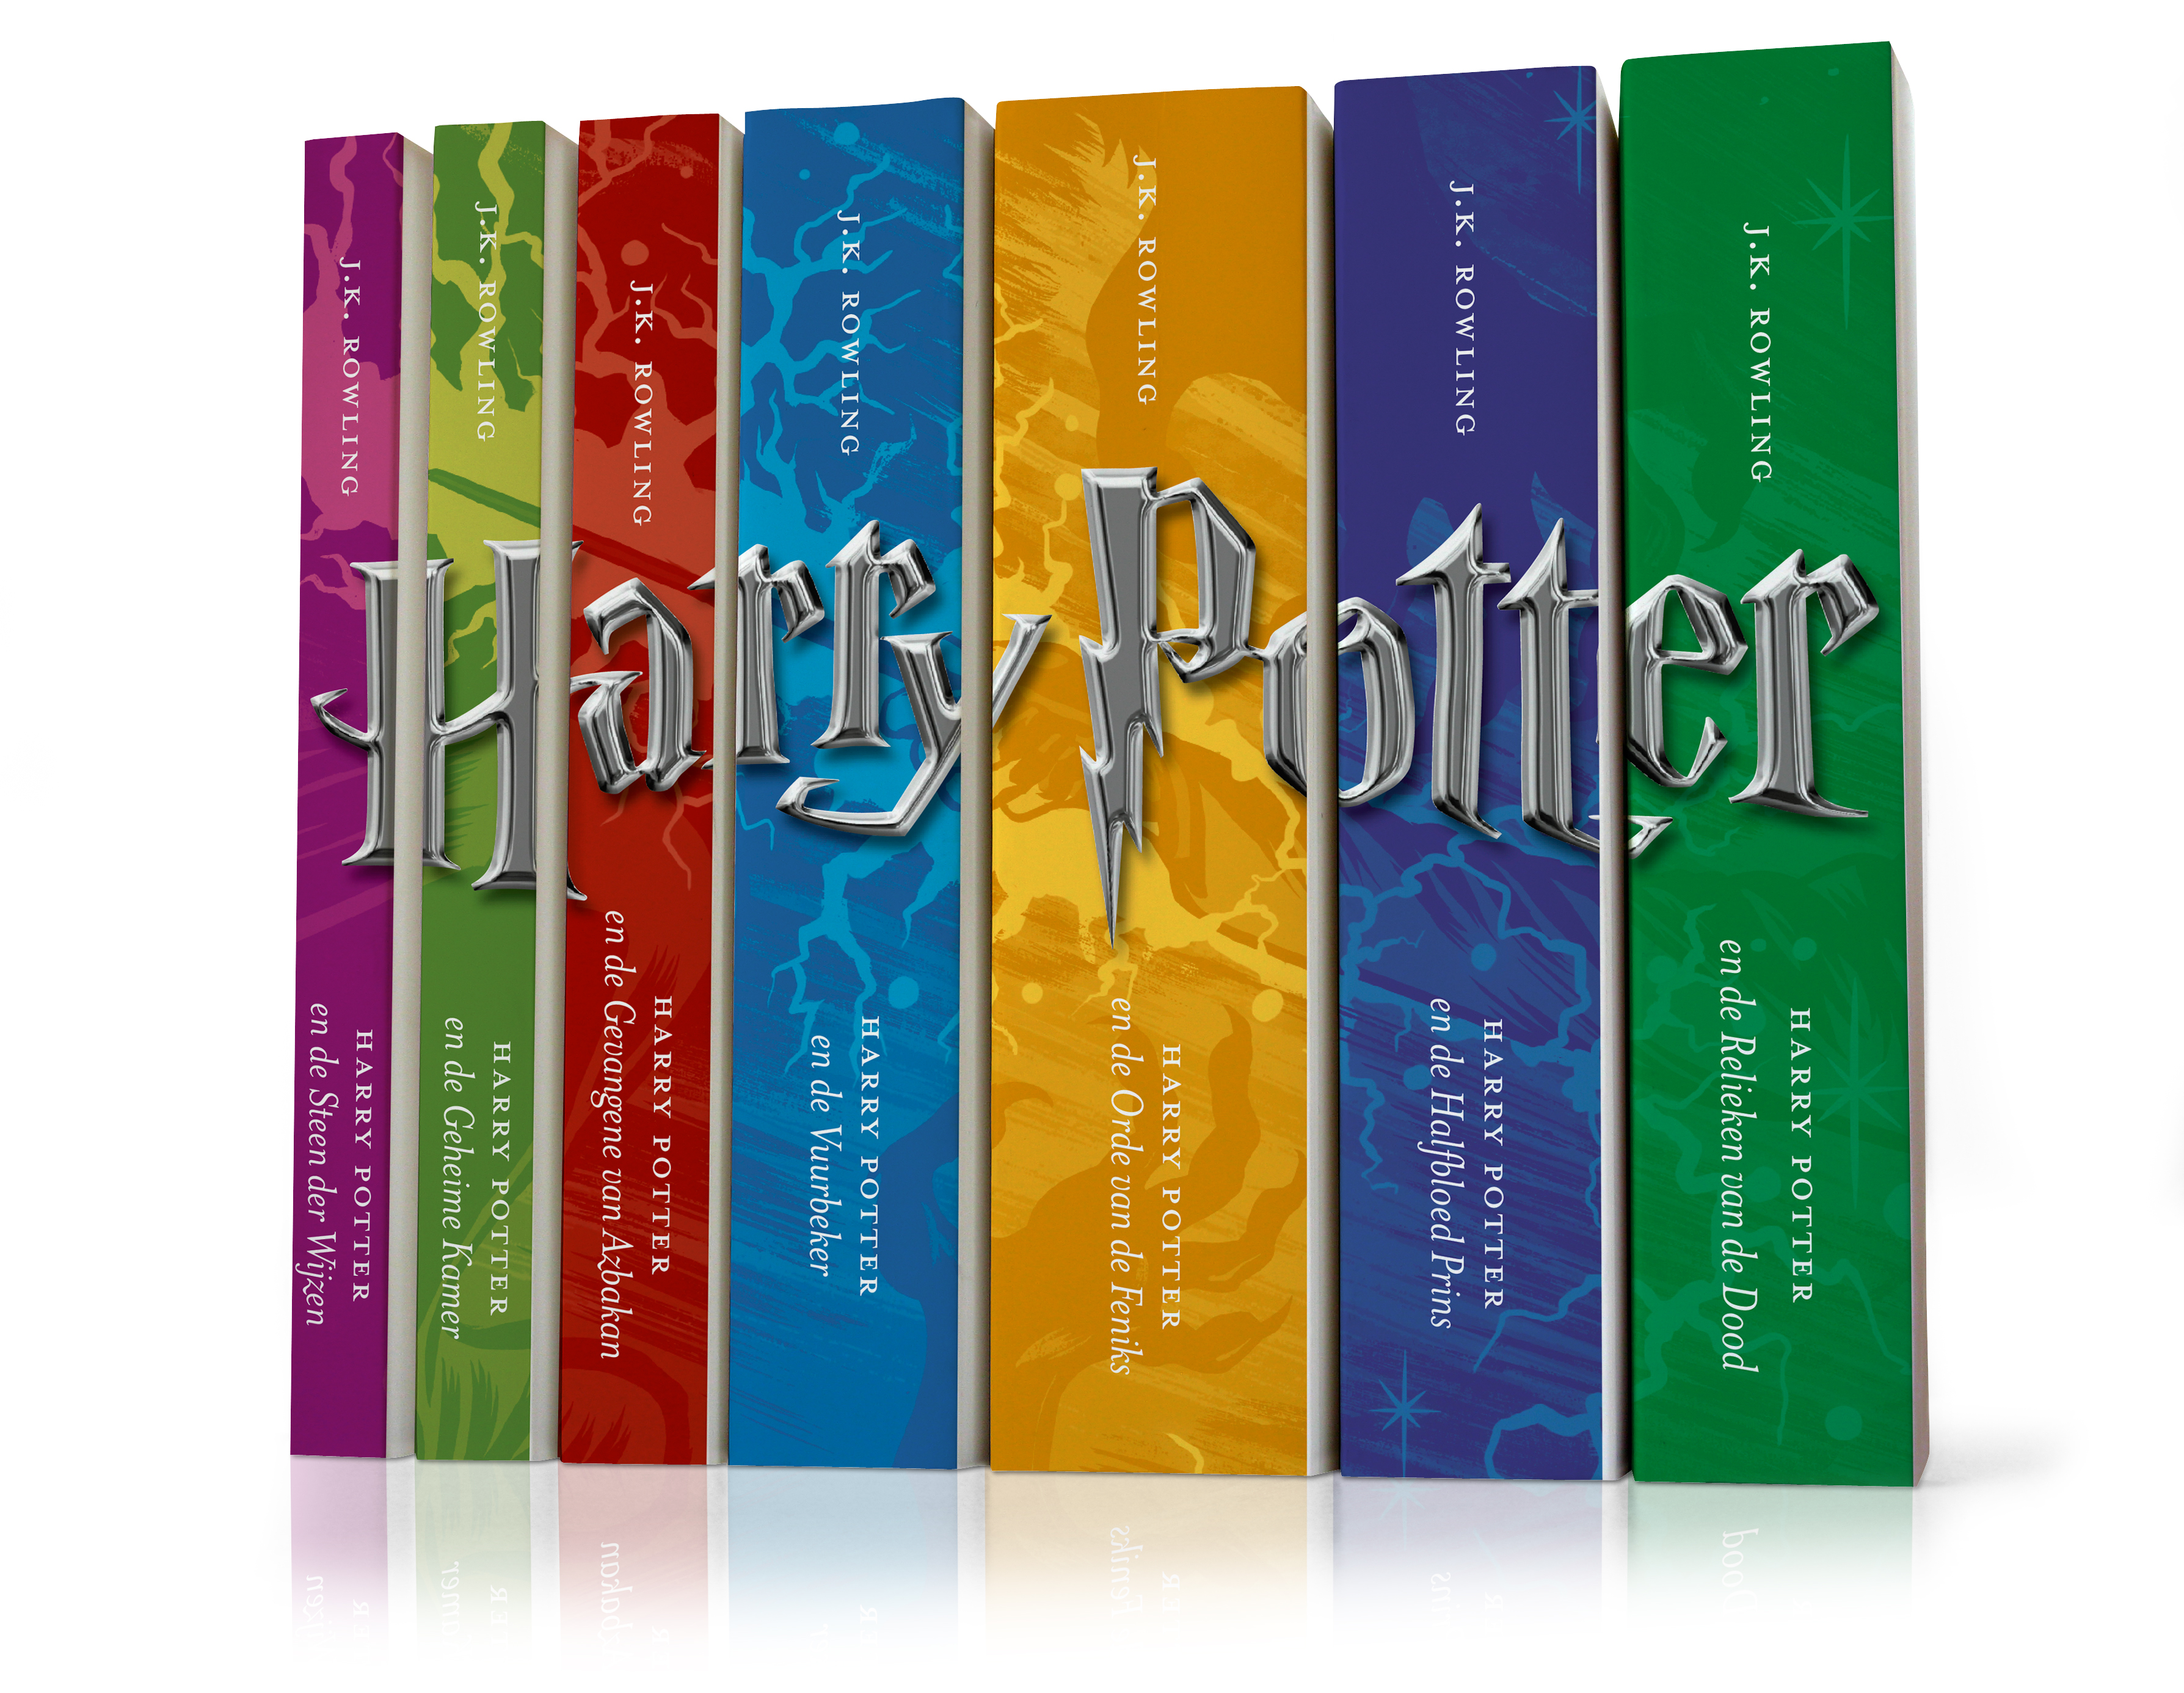 Wegversperring As gekruld Meer dan 500 miljoen Harry Potter-boeken verkocht! – De Harmonie